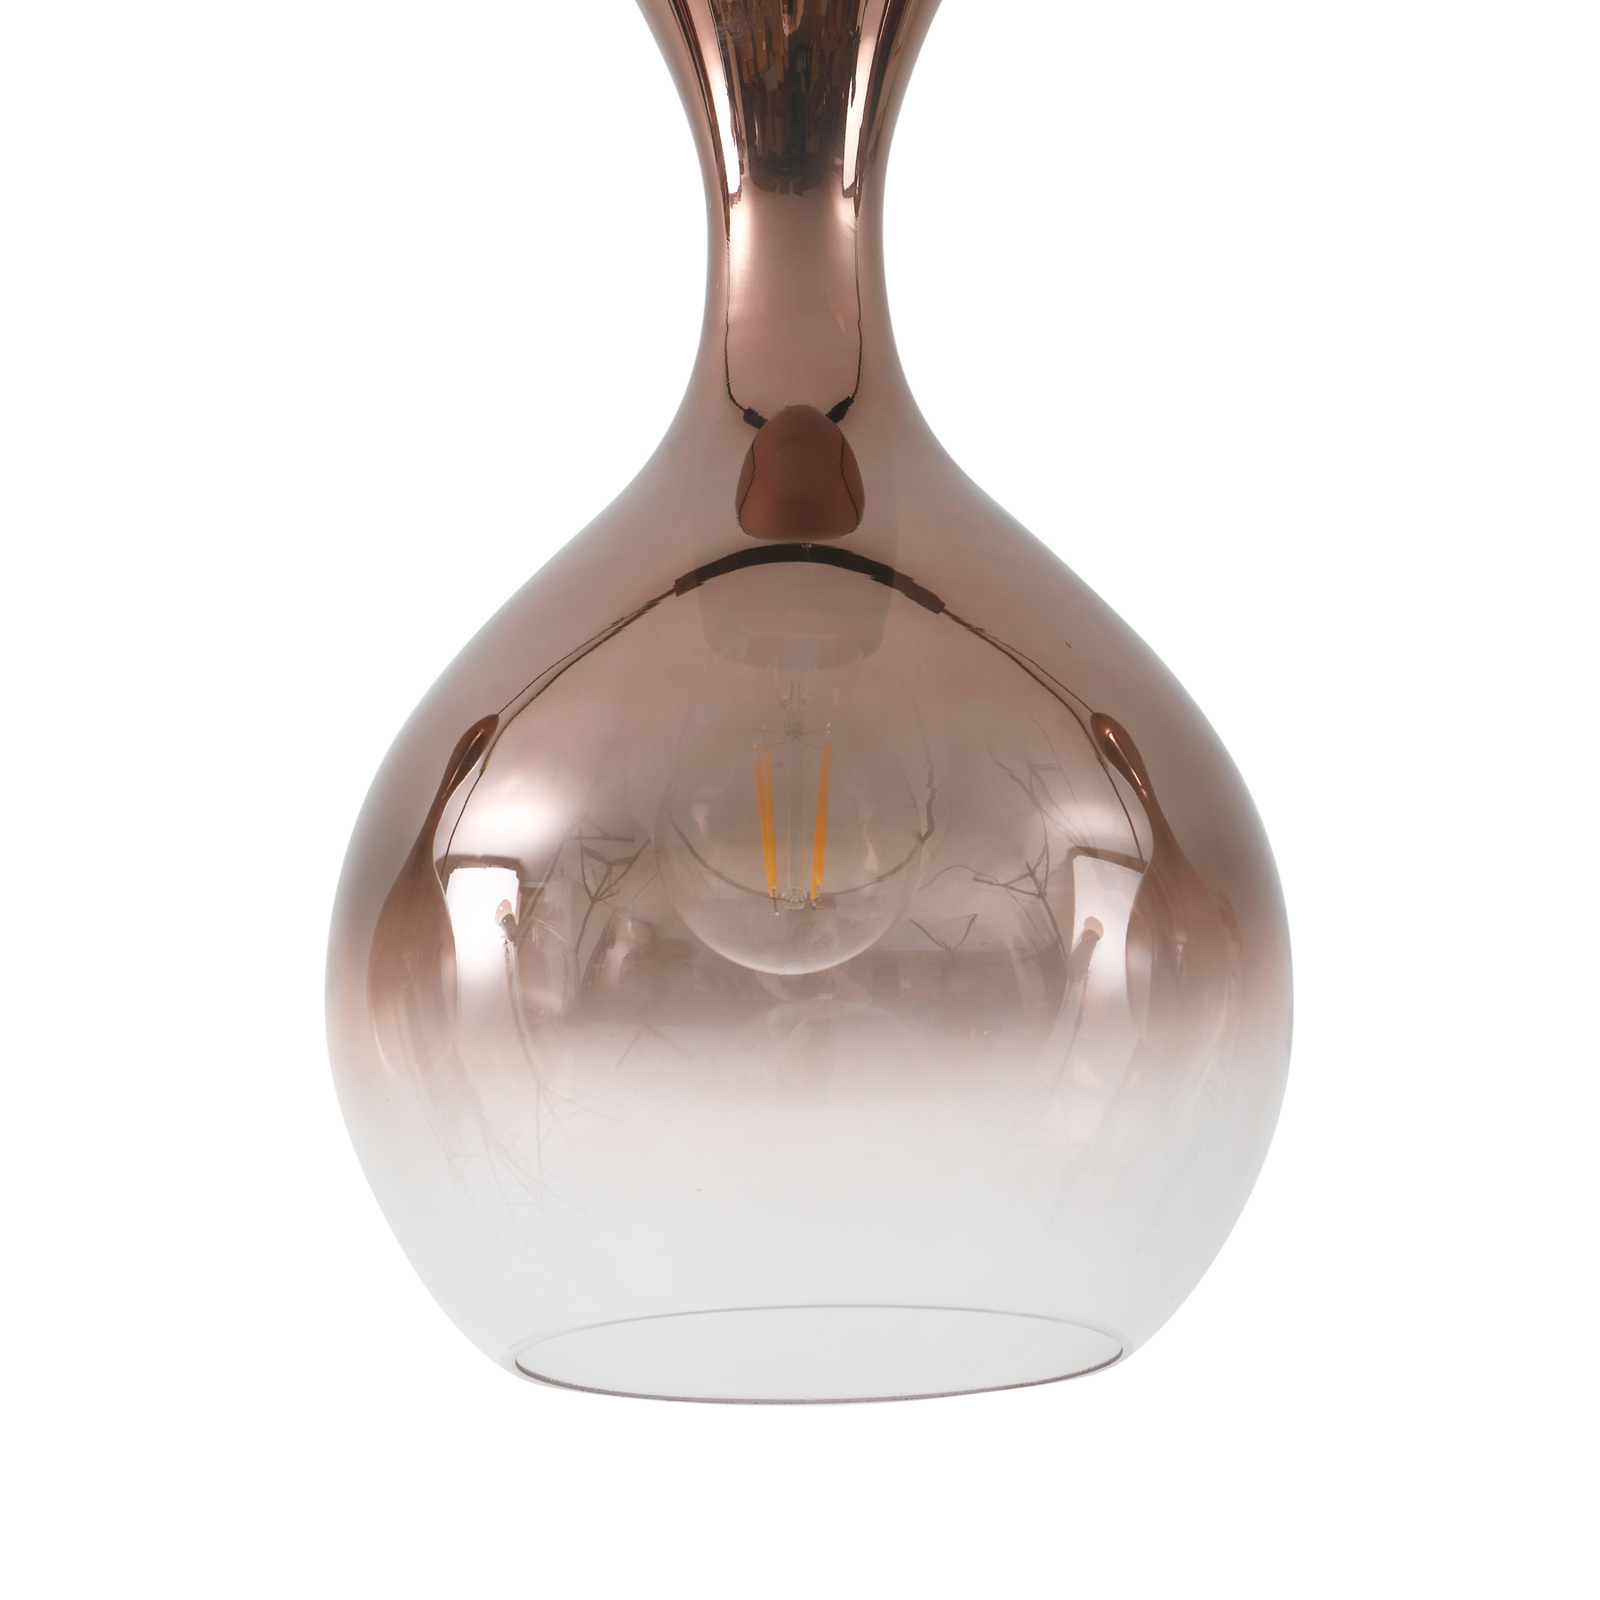 Lucande Lampe à suspendre Lyrisa, 3 lampes, couleur cuivre, verre, 22cm